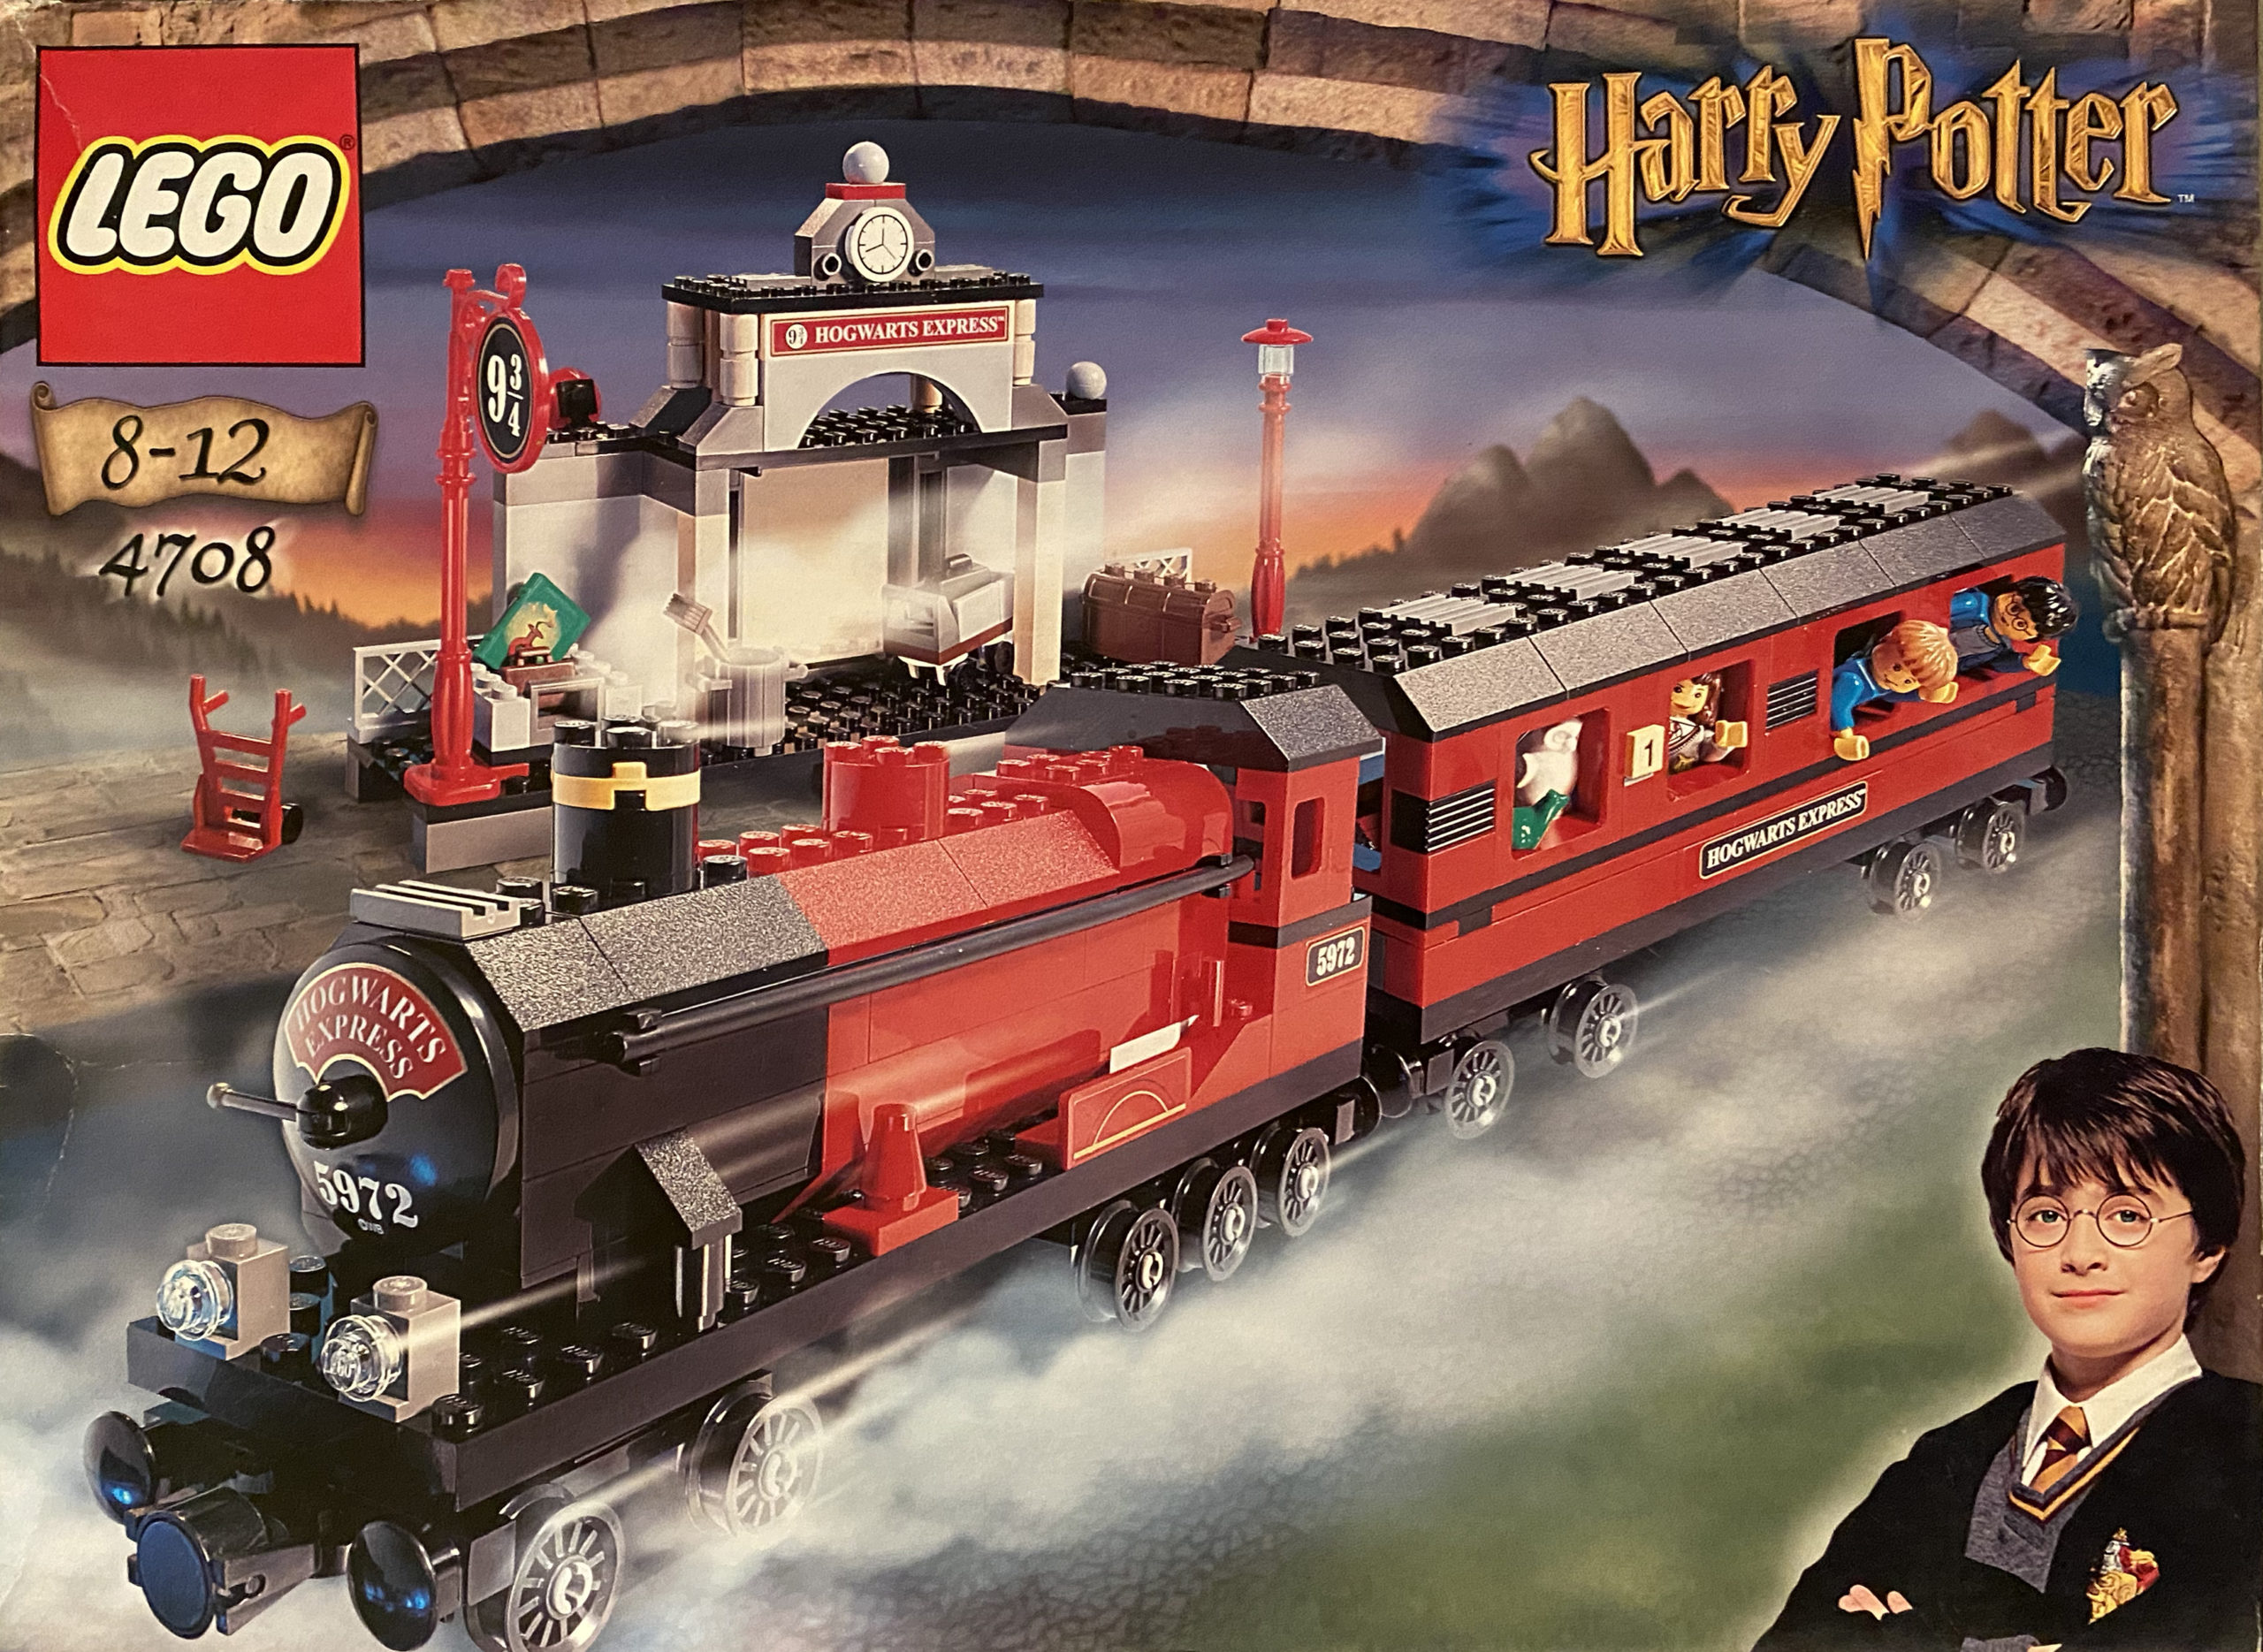 4708: Hogwarts Express